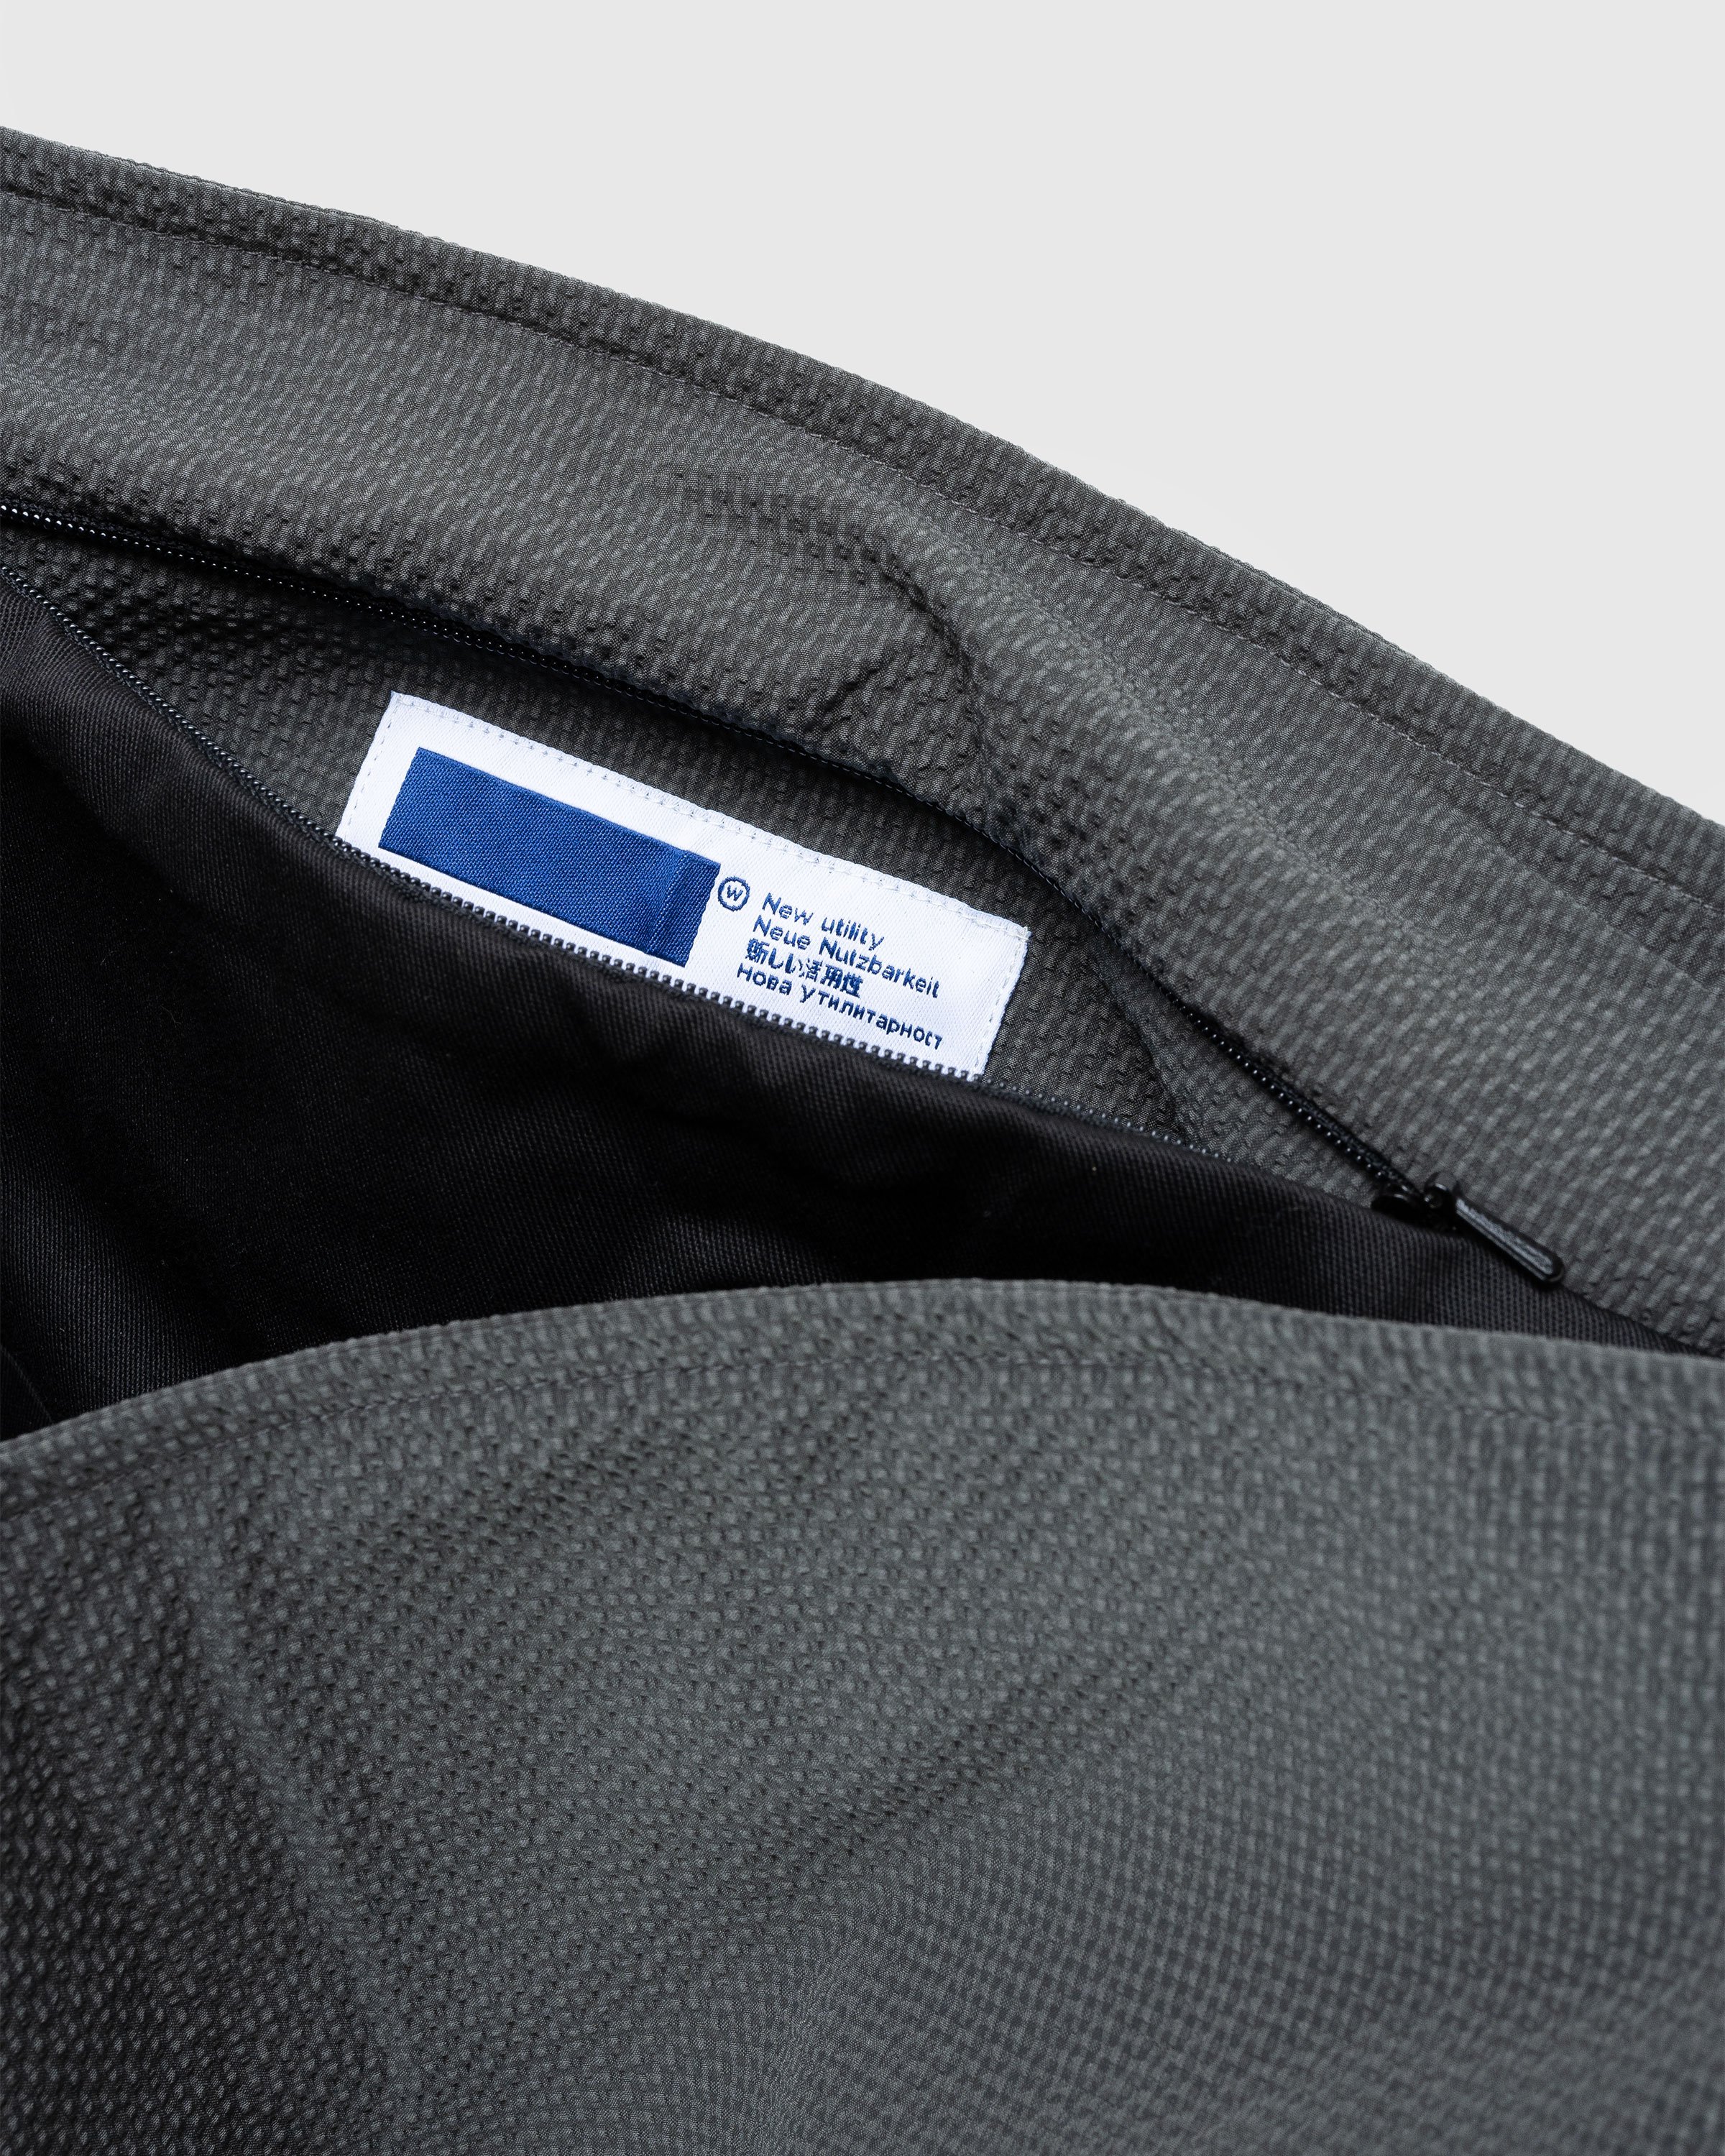 AFFXWRKS - Panel Bag Grey Seersucker - Accessories - Grey - Image 4